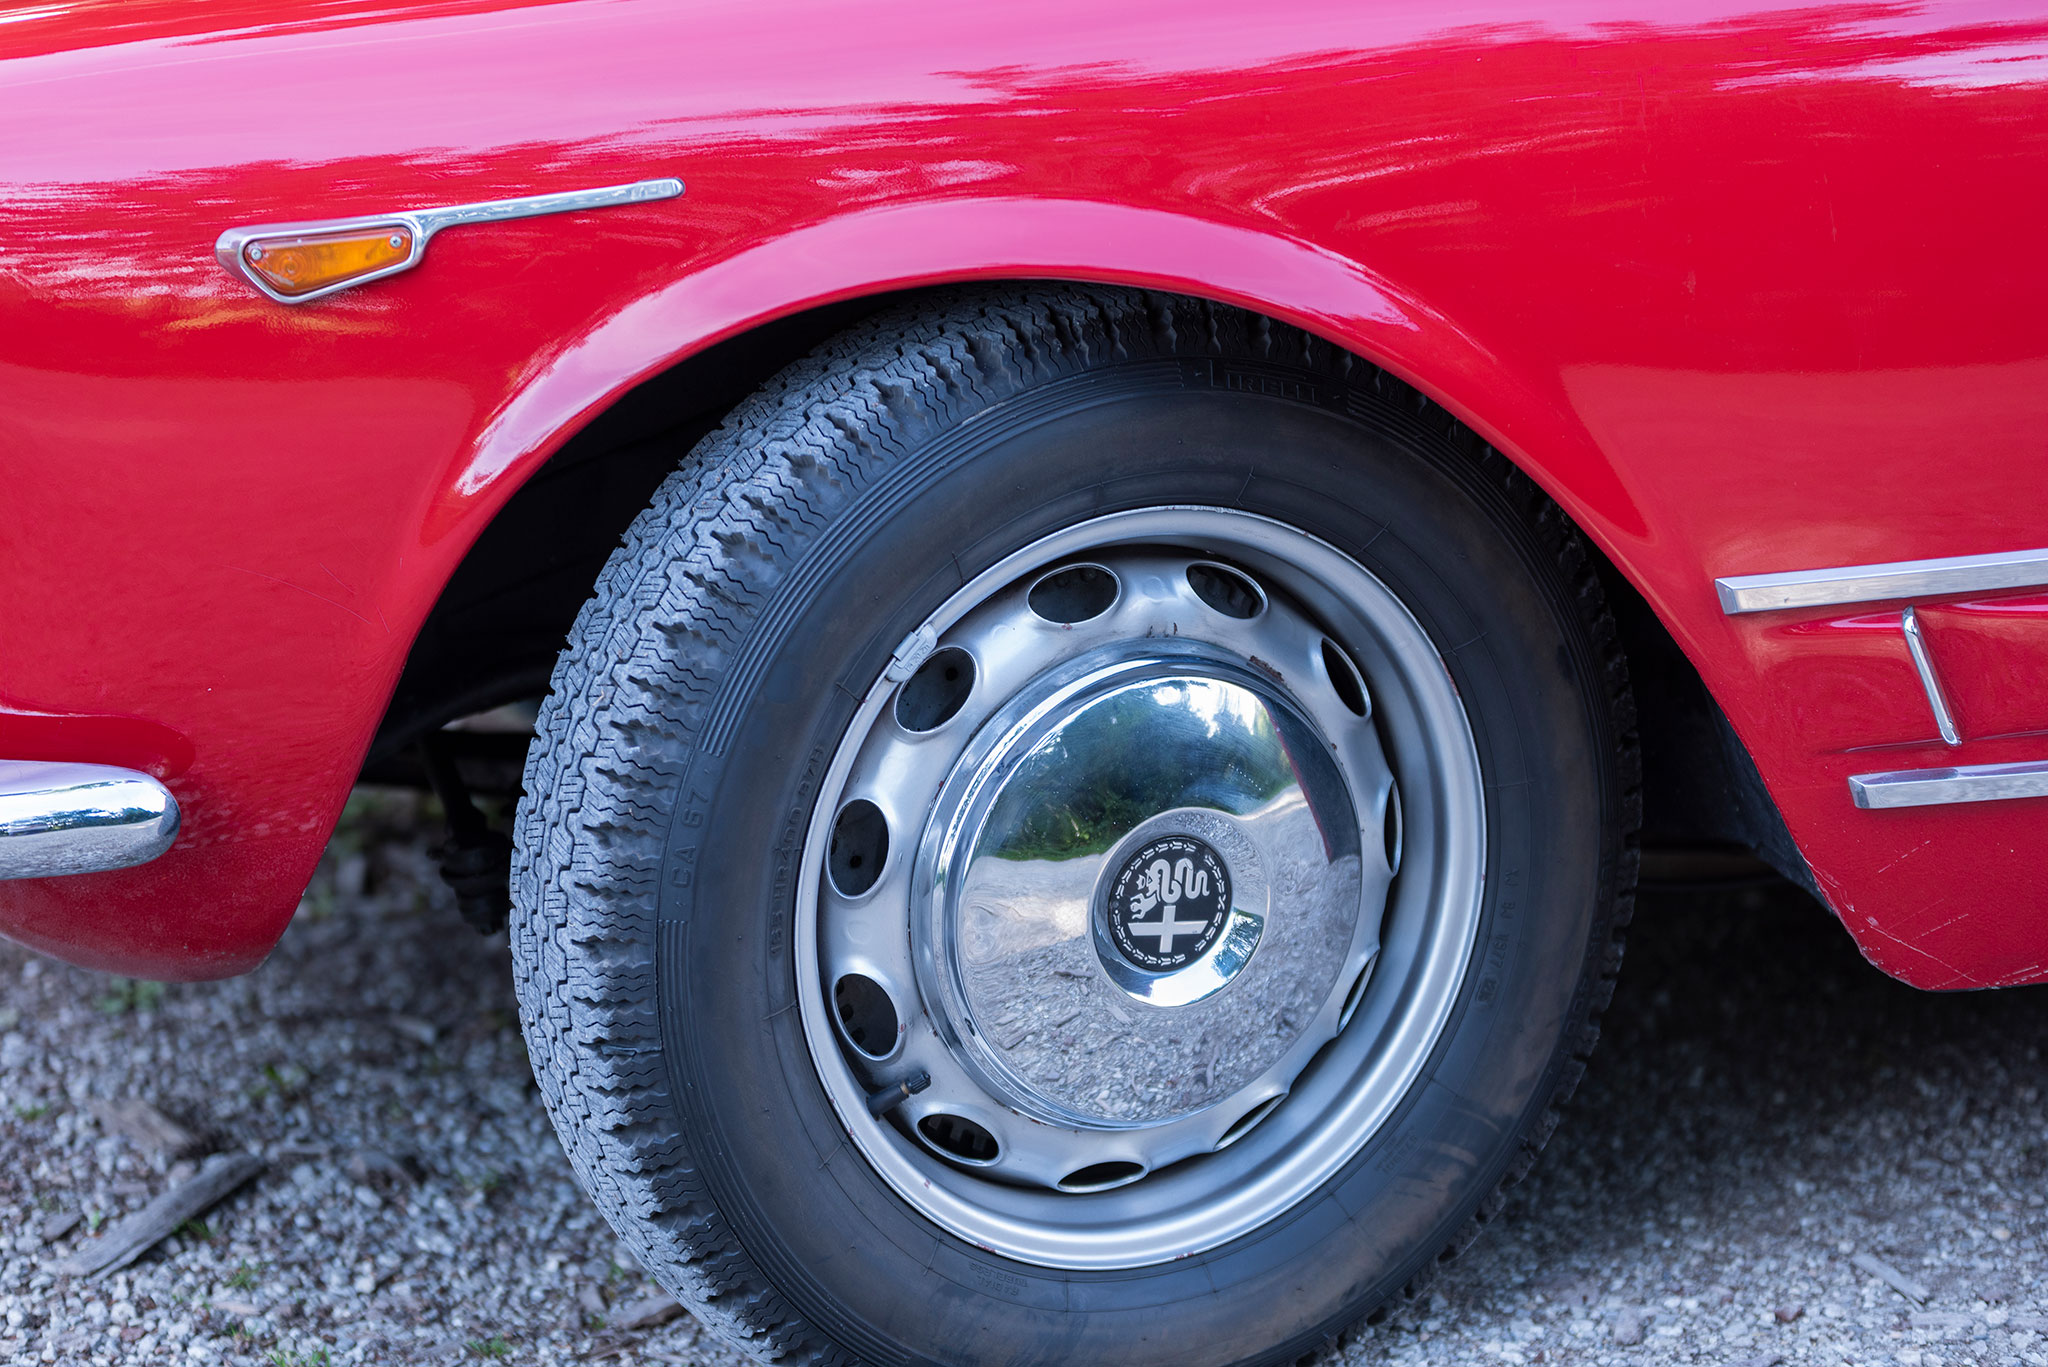 1960 Alfa Romeo 2000 Spider Touring – jantes en tôle de 16 pouces habillées d’enjoliveurs chromés siglés Alfa Romeo.